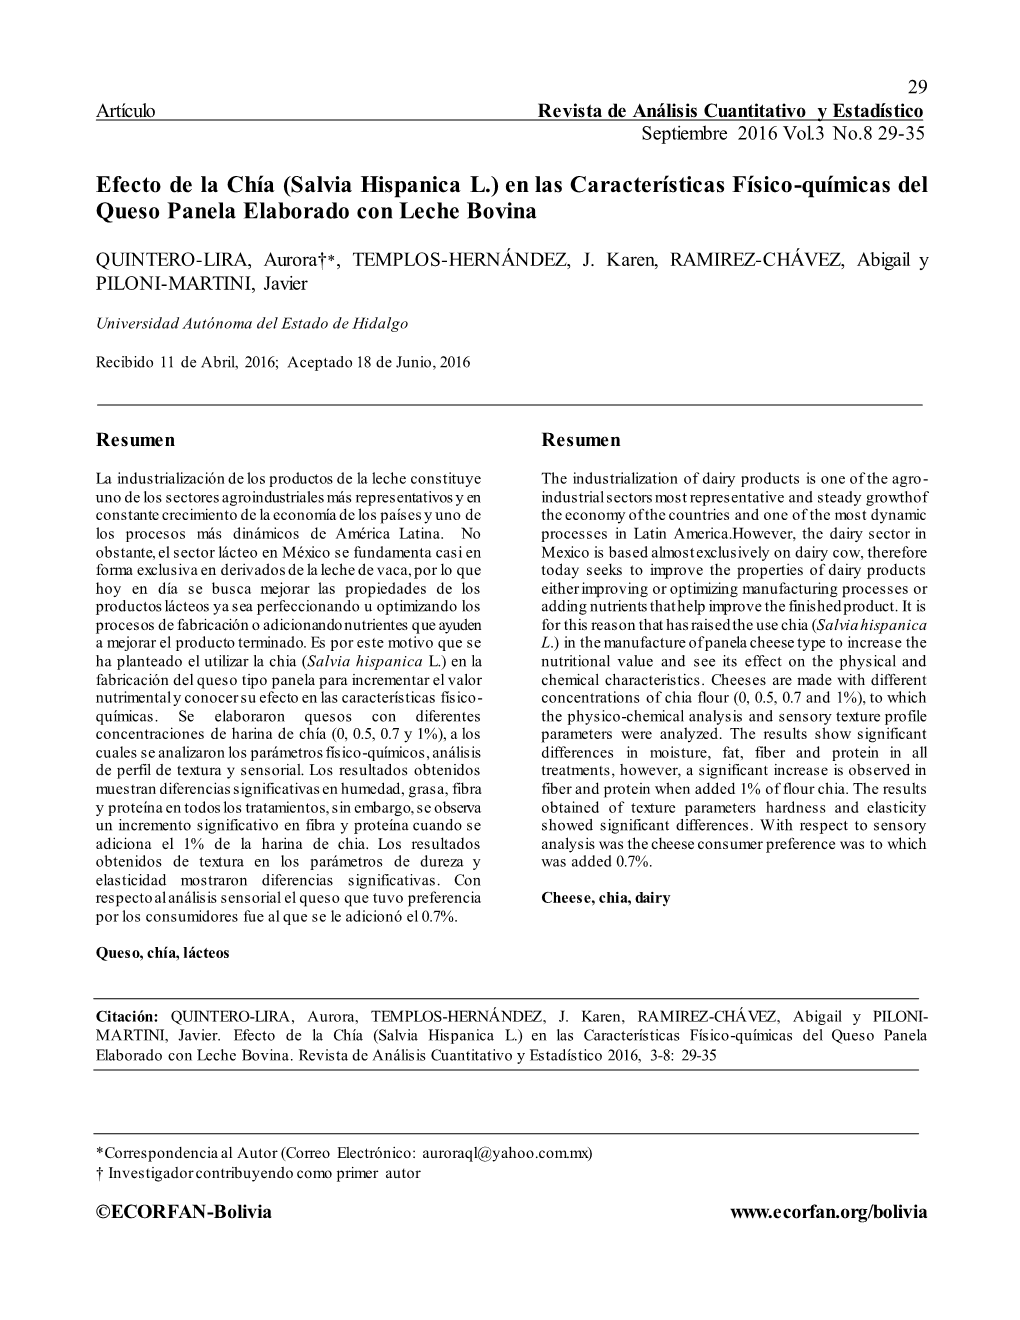 Efecto De La Chía (Salvia Hispanica L.) En Las Características Físico-Químicas Del Queso Panela Elaborado Con Leche Bovina